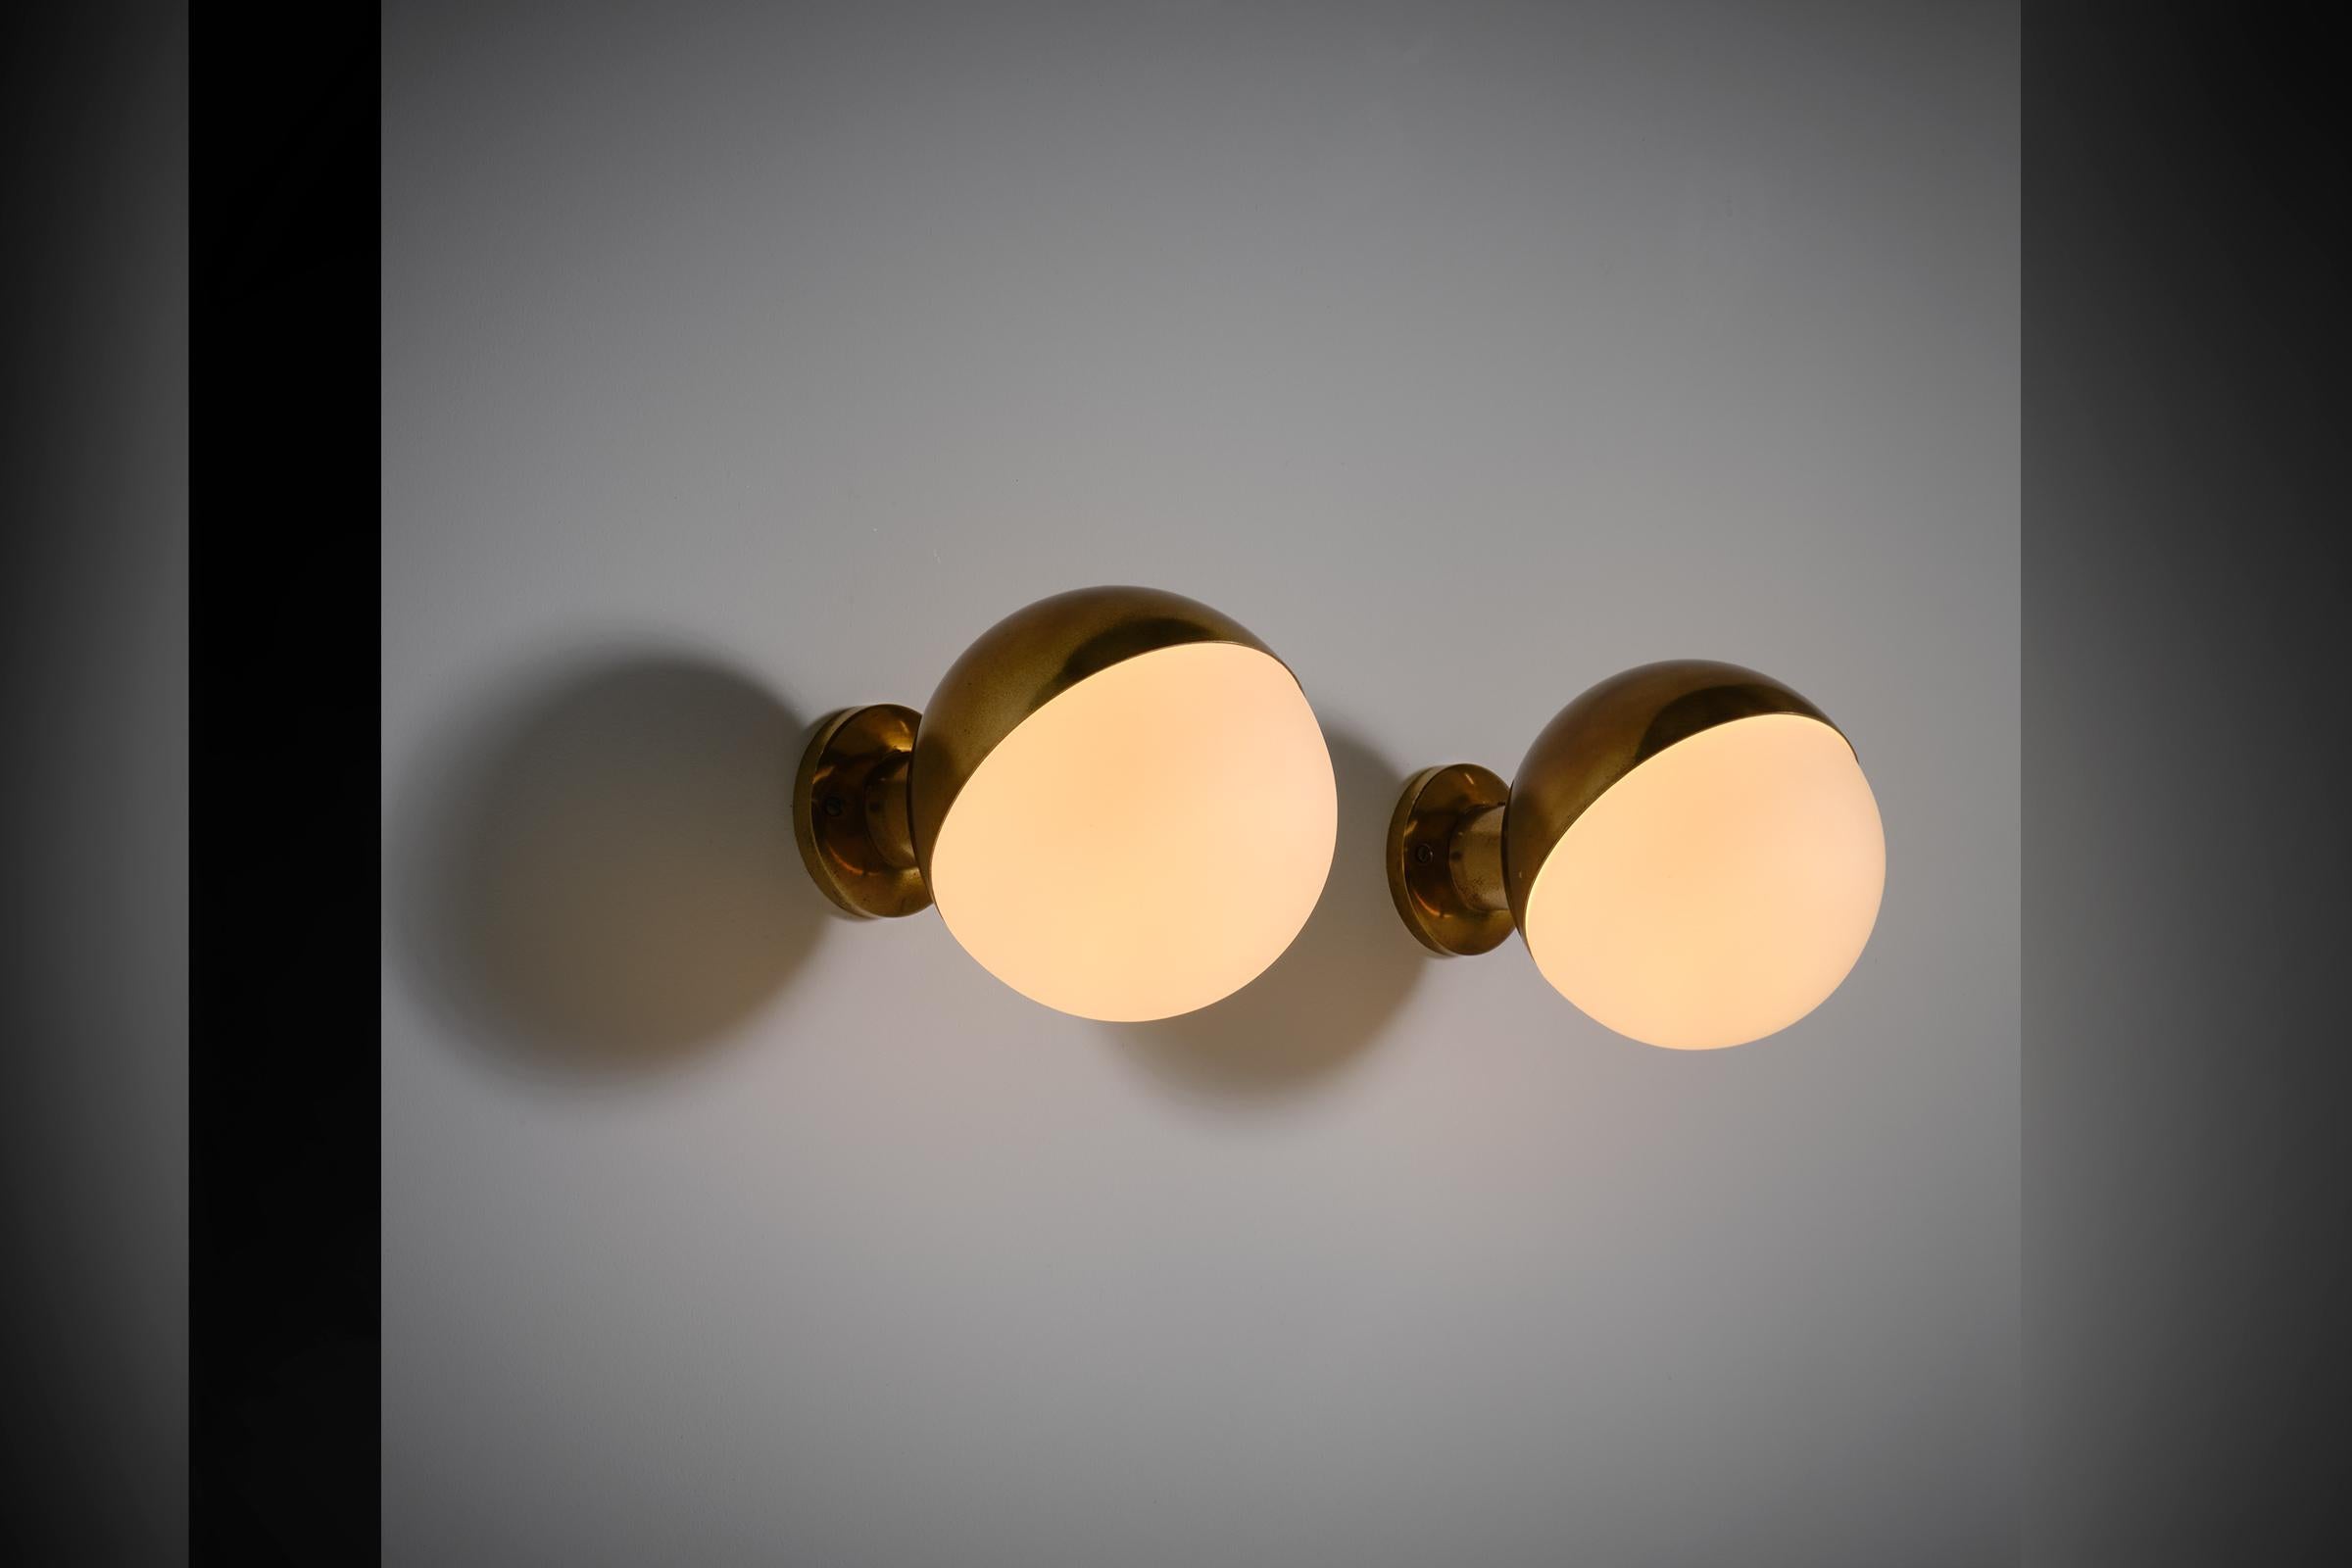 Stilnovo 'Modell 2045' Wandleuchten, Italien 1950er Jahre. Wunderschönes Design aus einer massiven kugelförmigen Messingleuchte und mattem Opalglas. Die Lampen erzeugen ein sehr schönes warmes und weiches Licht durch den matten Diffusor. Mit dem